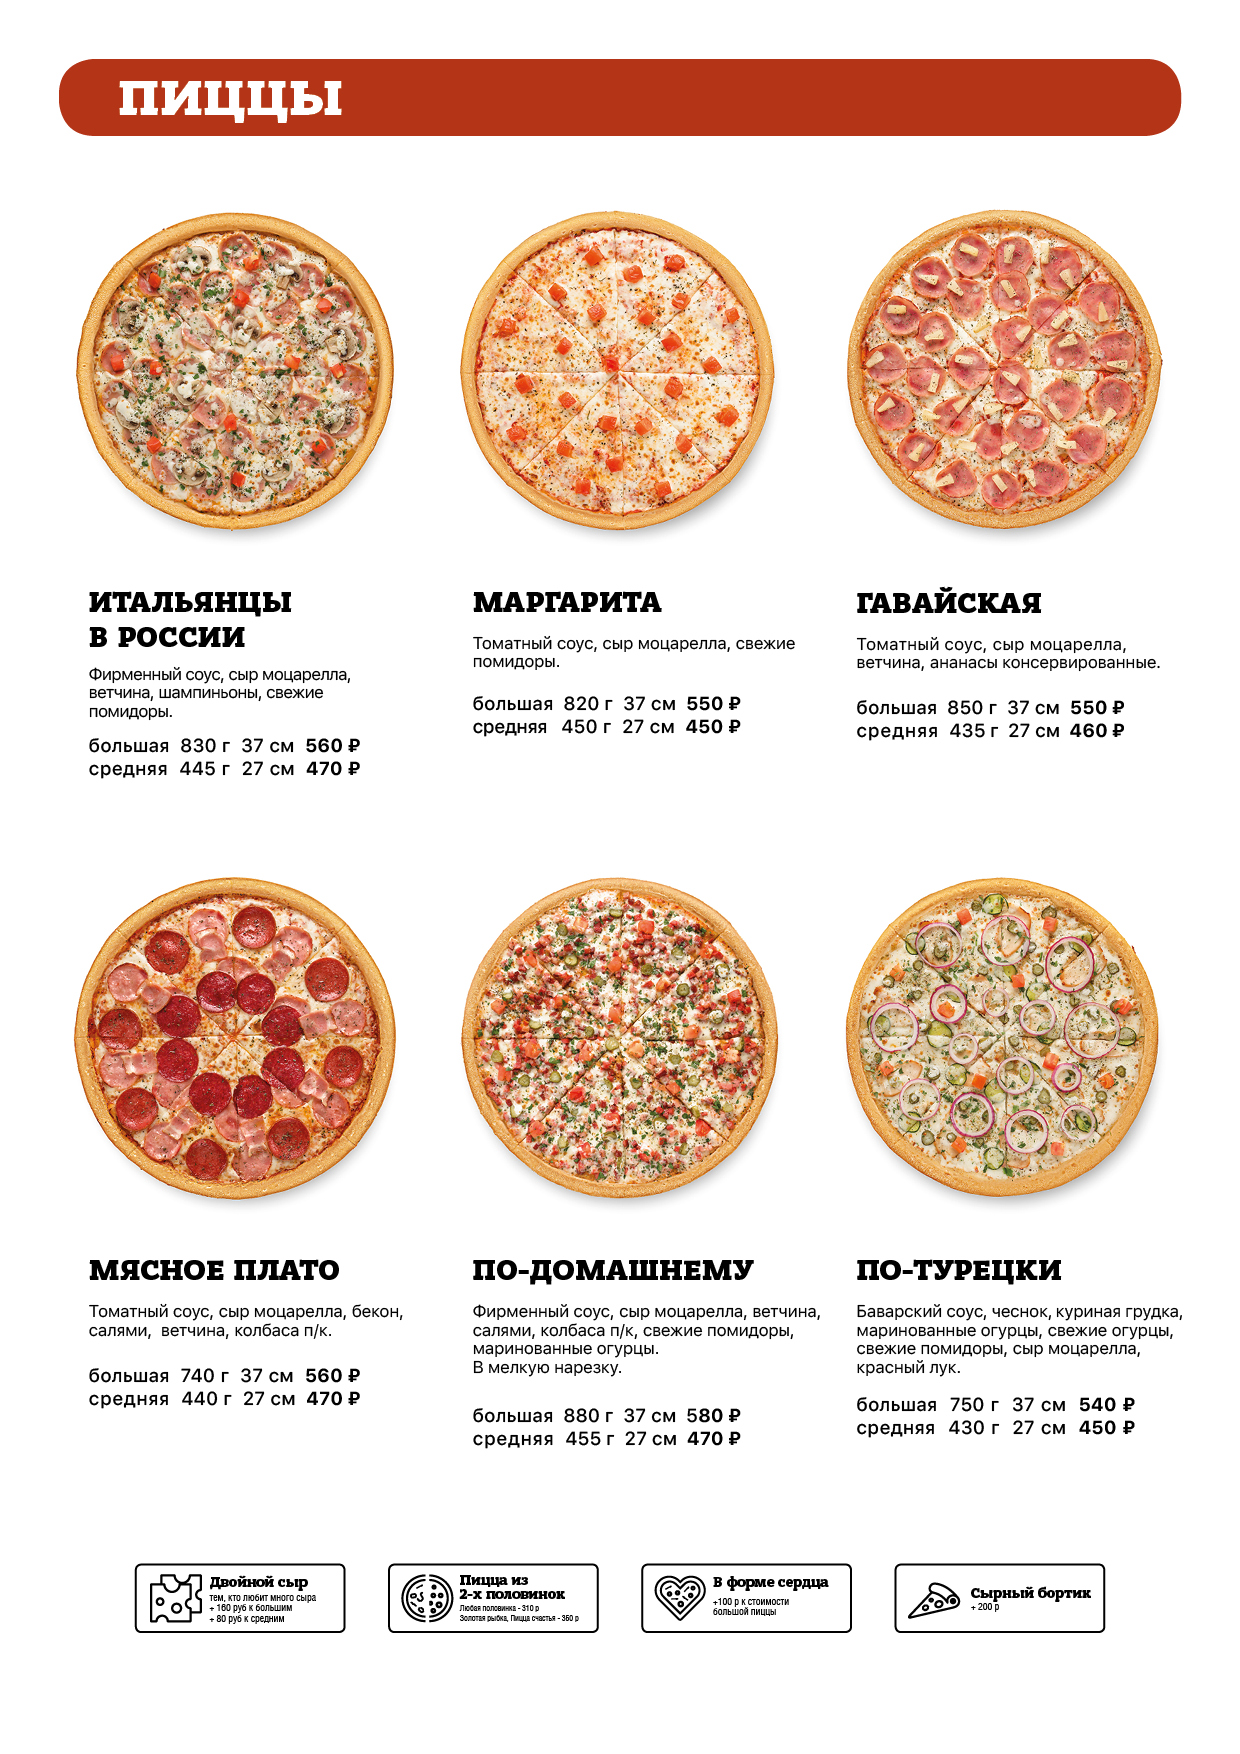 сколько калорий в пицце маргарита в одном куске фото 79